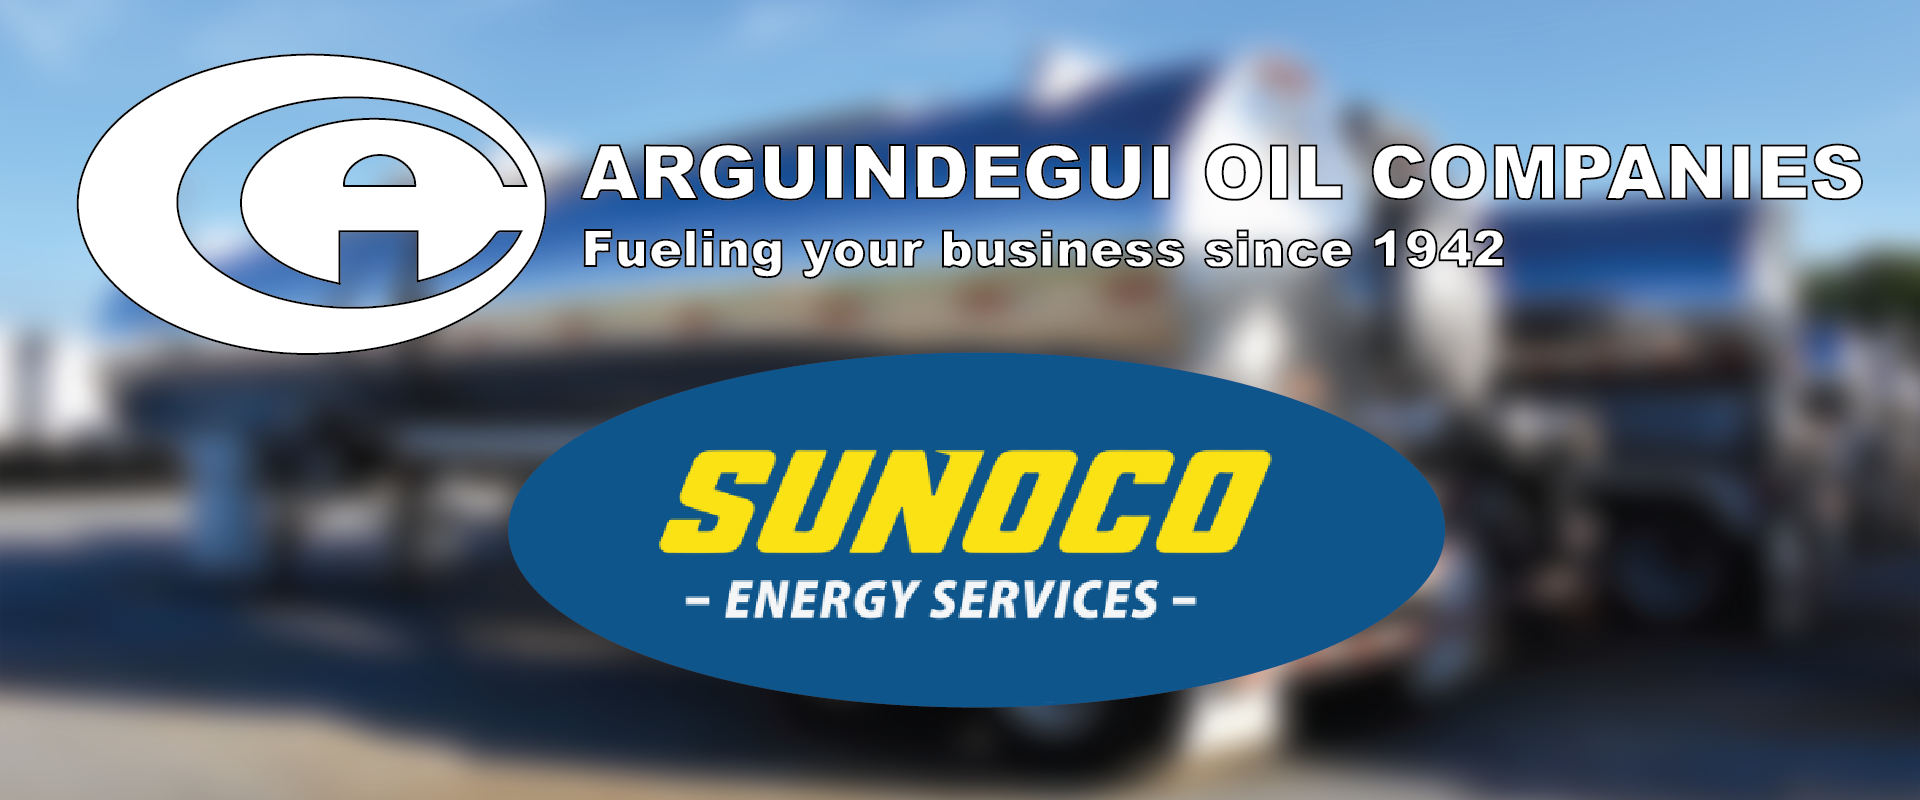 Arguindegui Oil Acquires Sunoco Energy Services